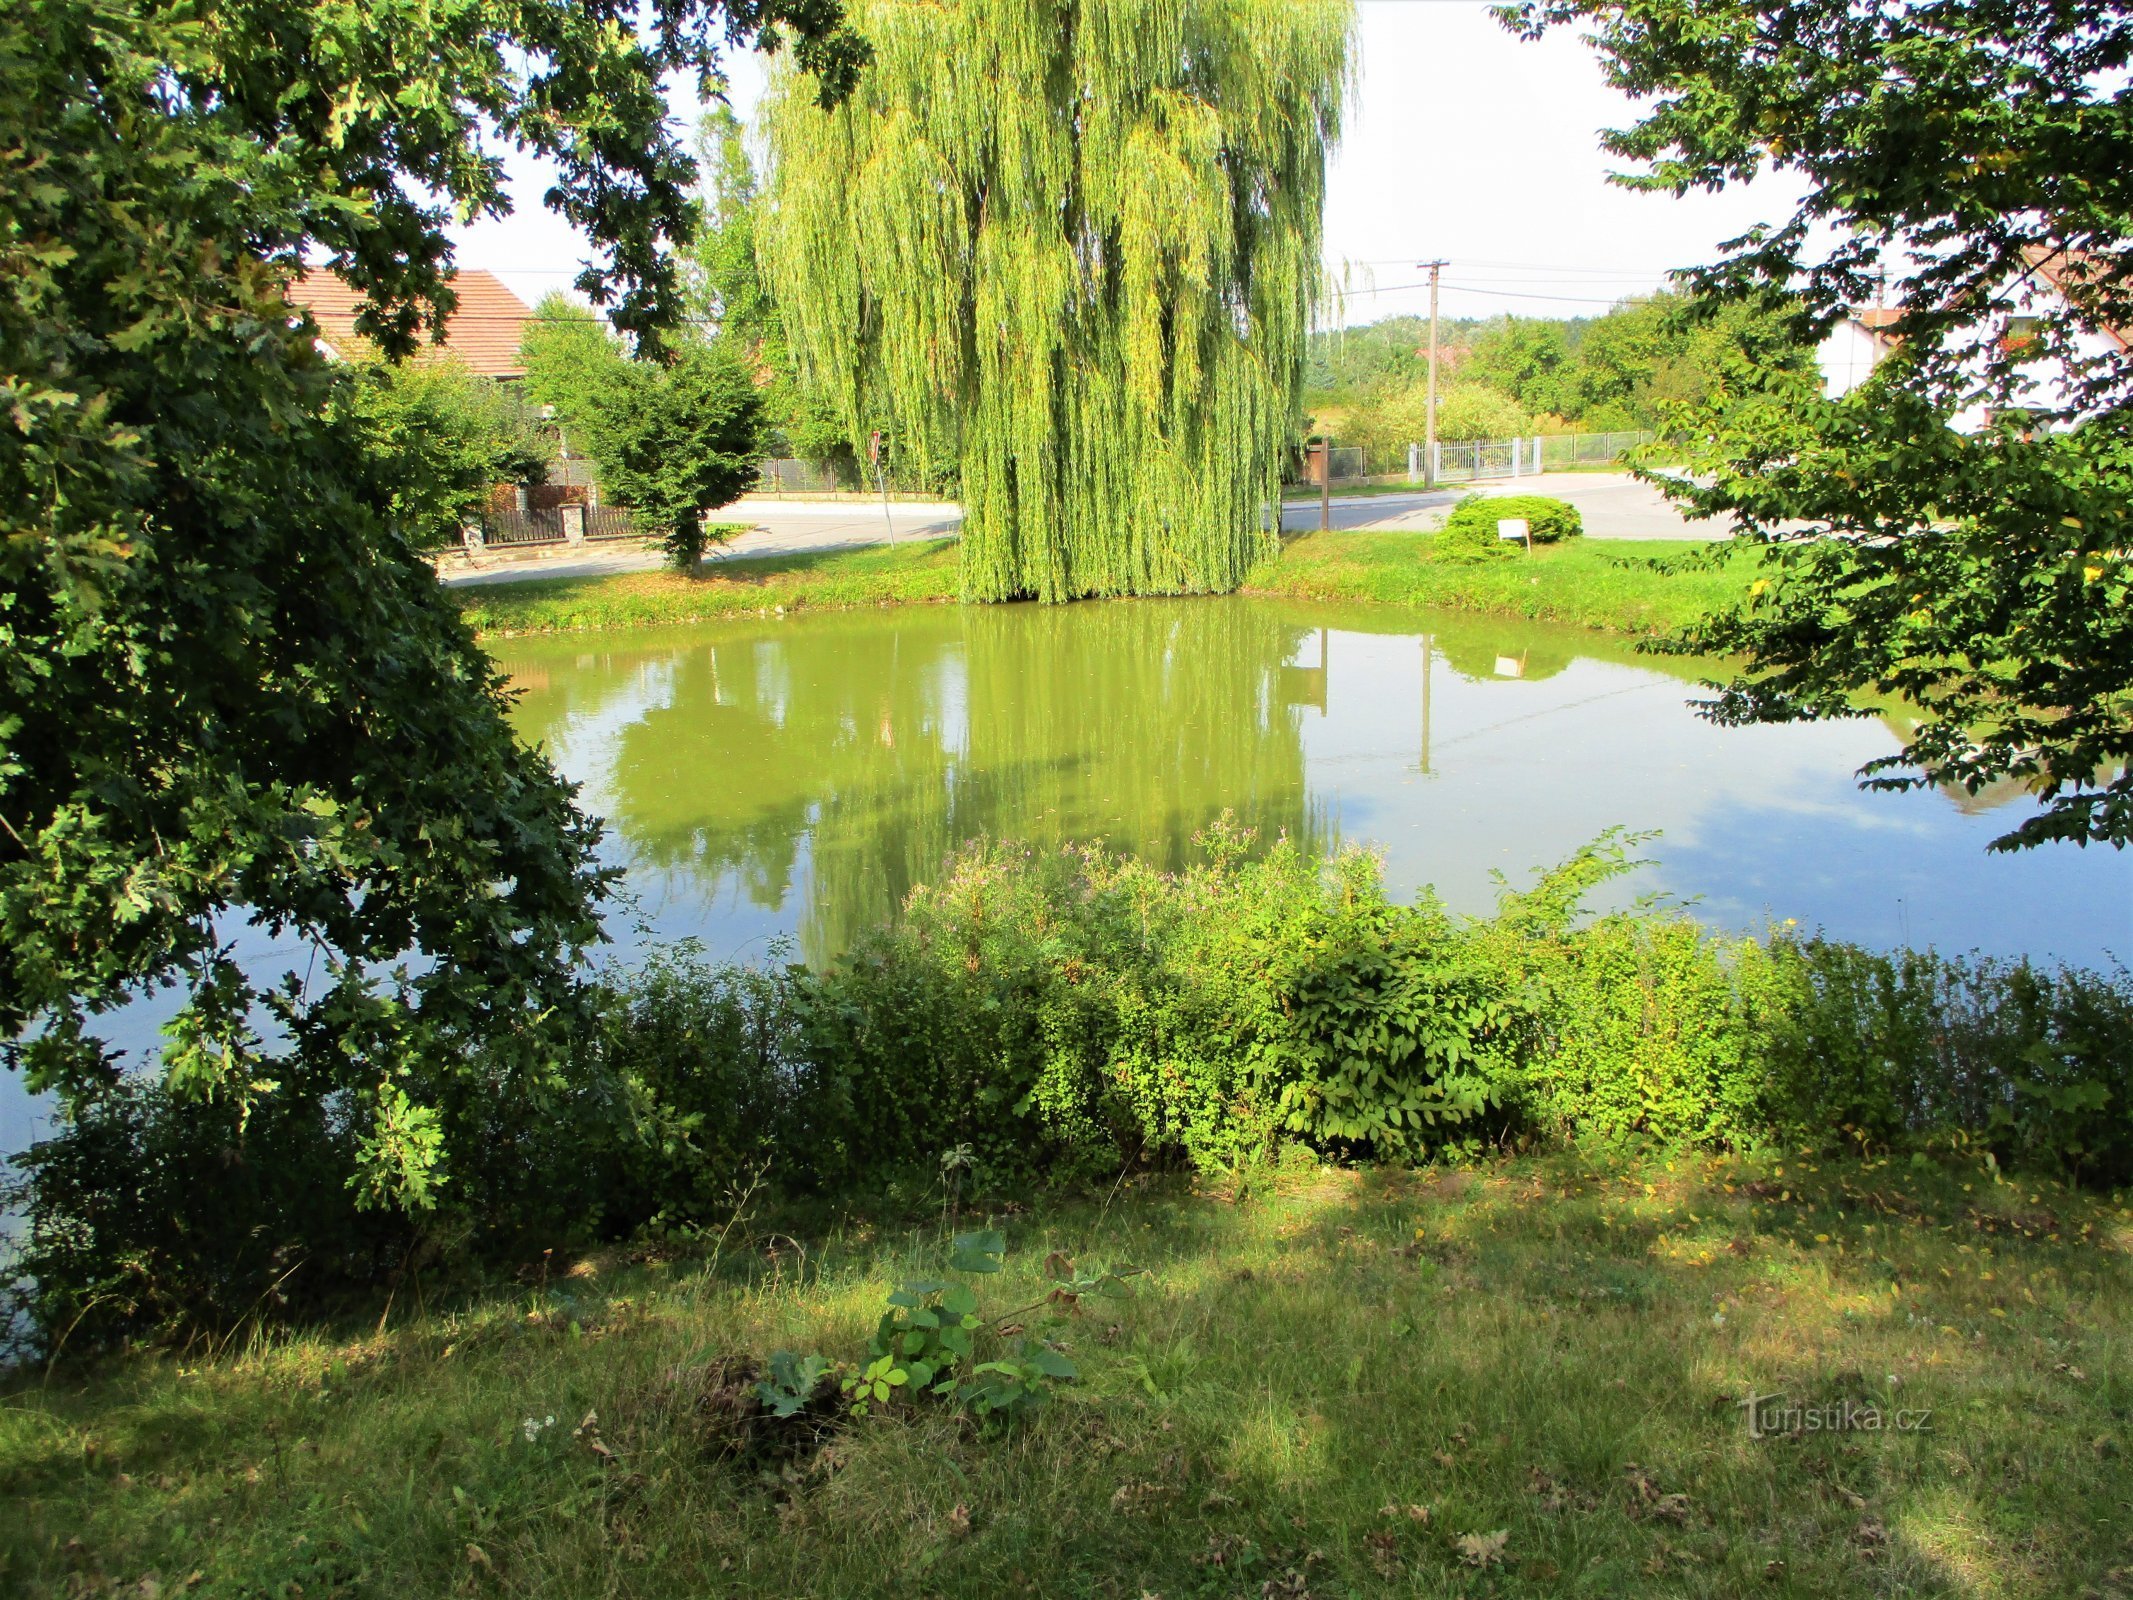 Village pond "Lednice" (Obědovice, 13.9.2020/XNUMX/XNUMX)